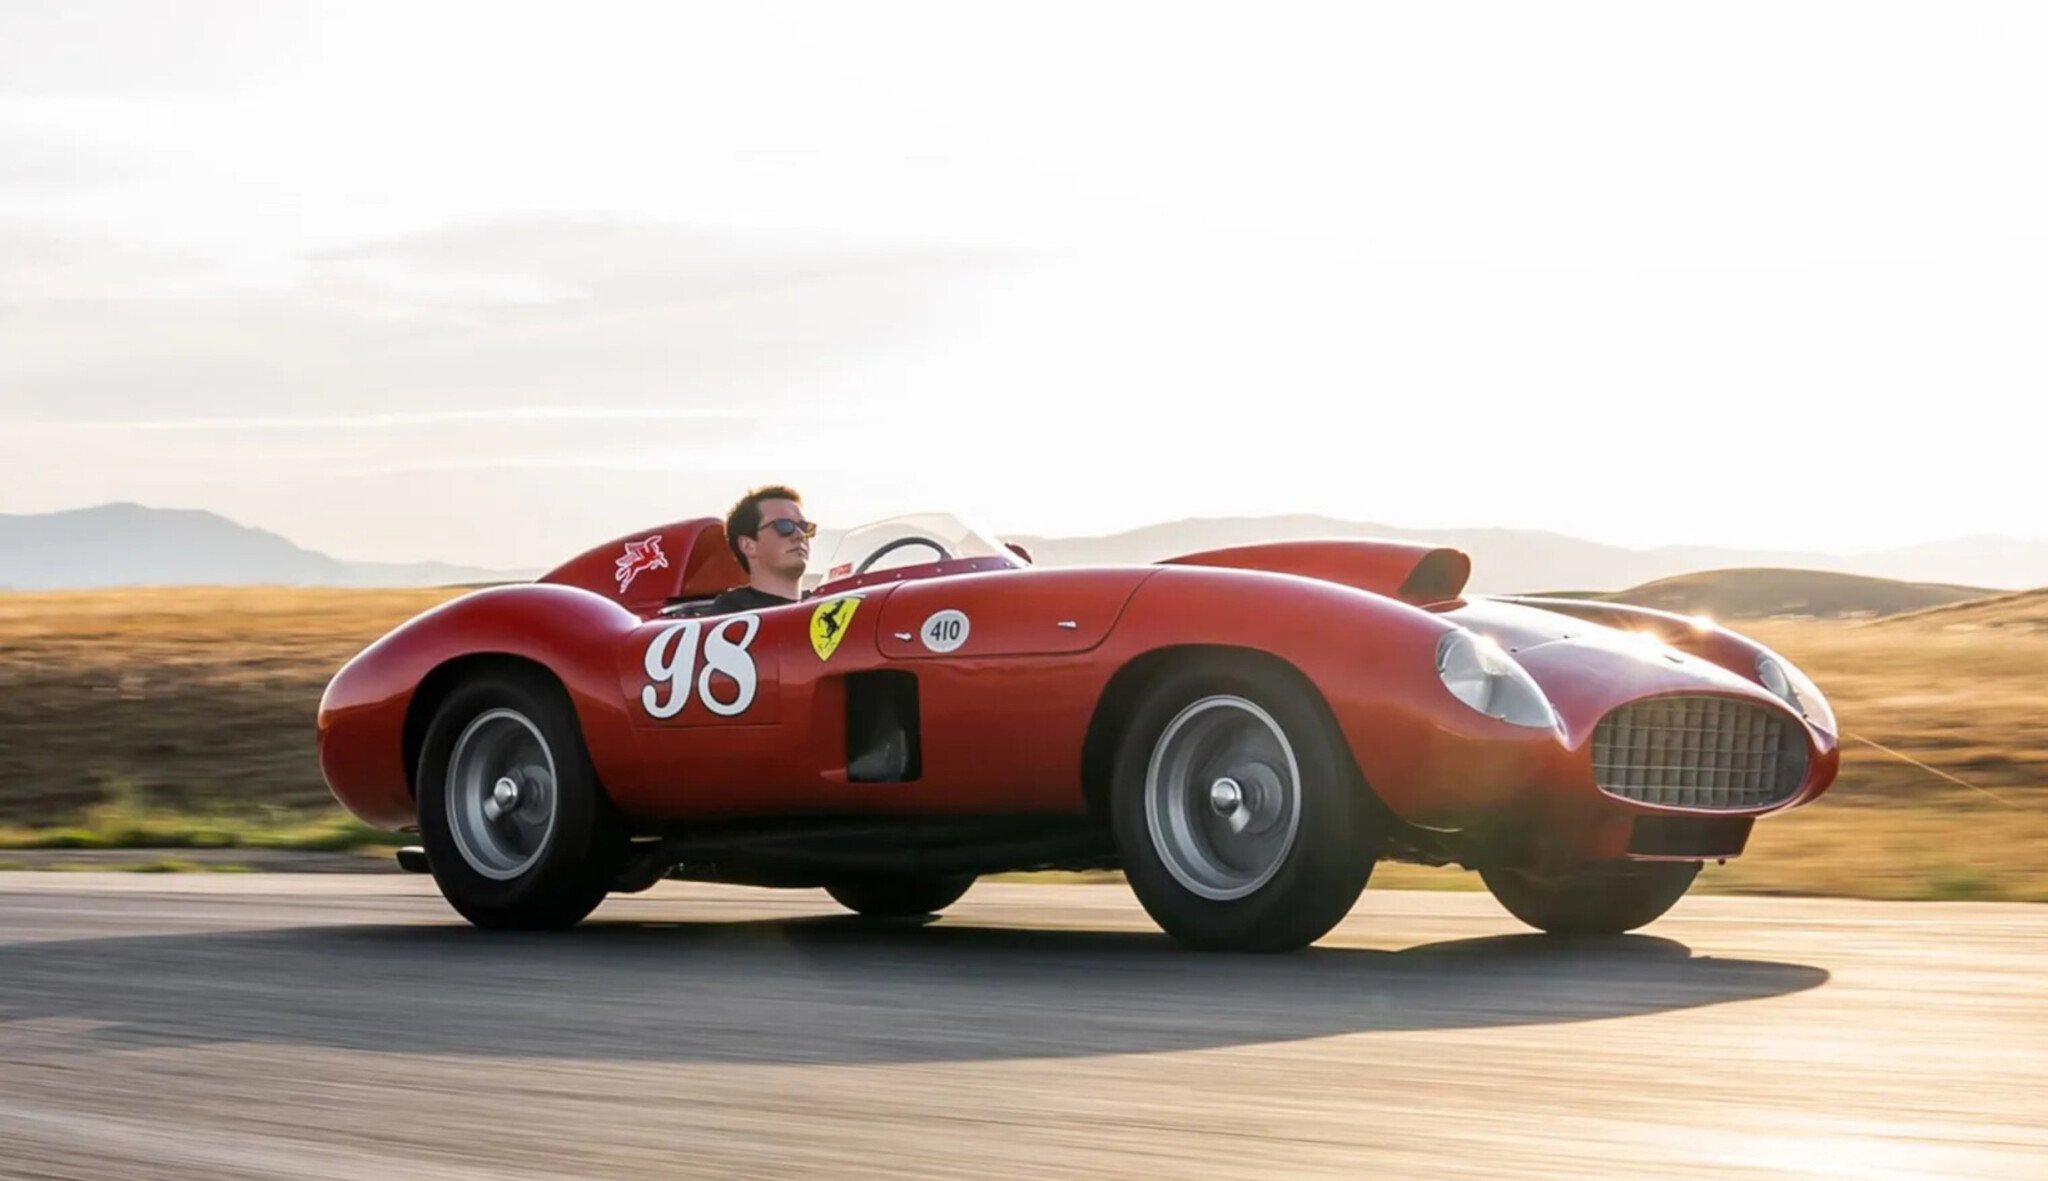 Podle Enza Ferrariho jeho nejlepší auto. Teď se může prodat za tři čtvrtě miliardy